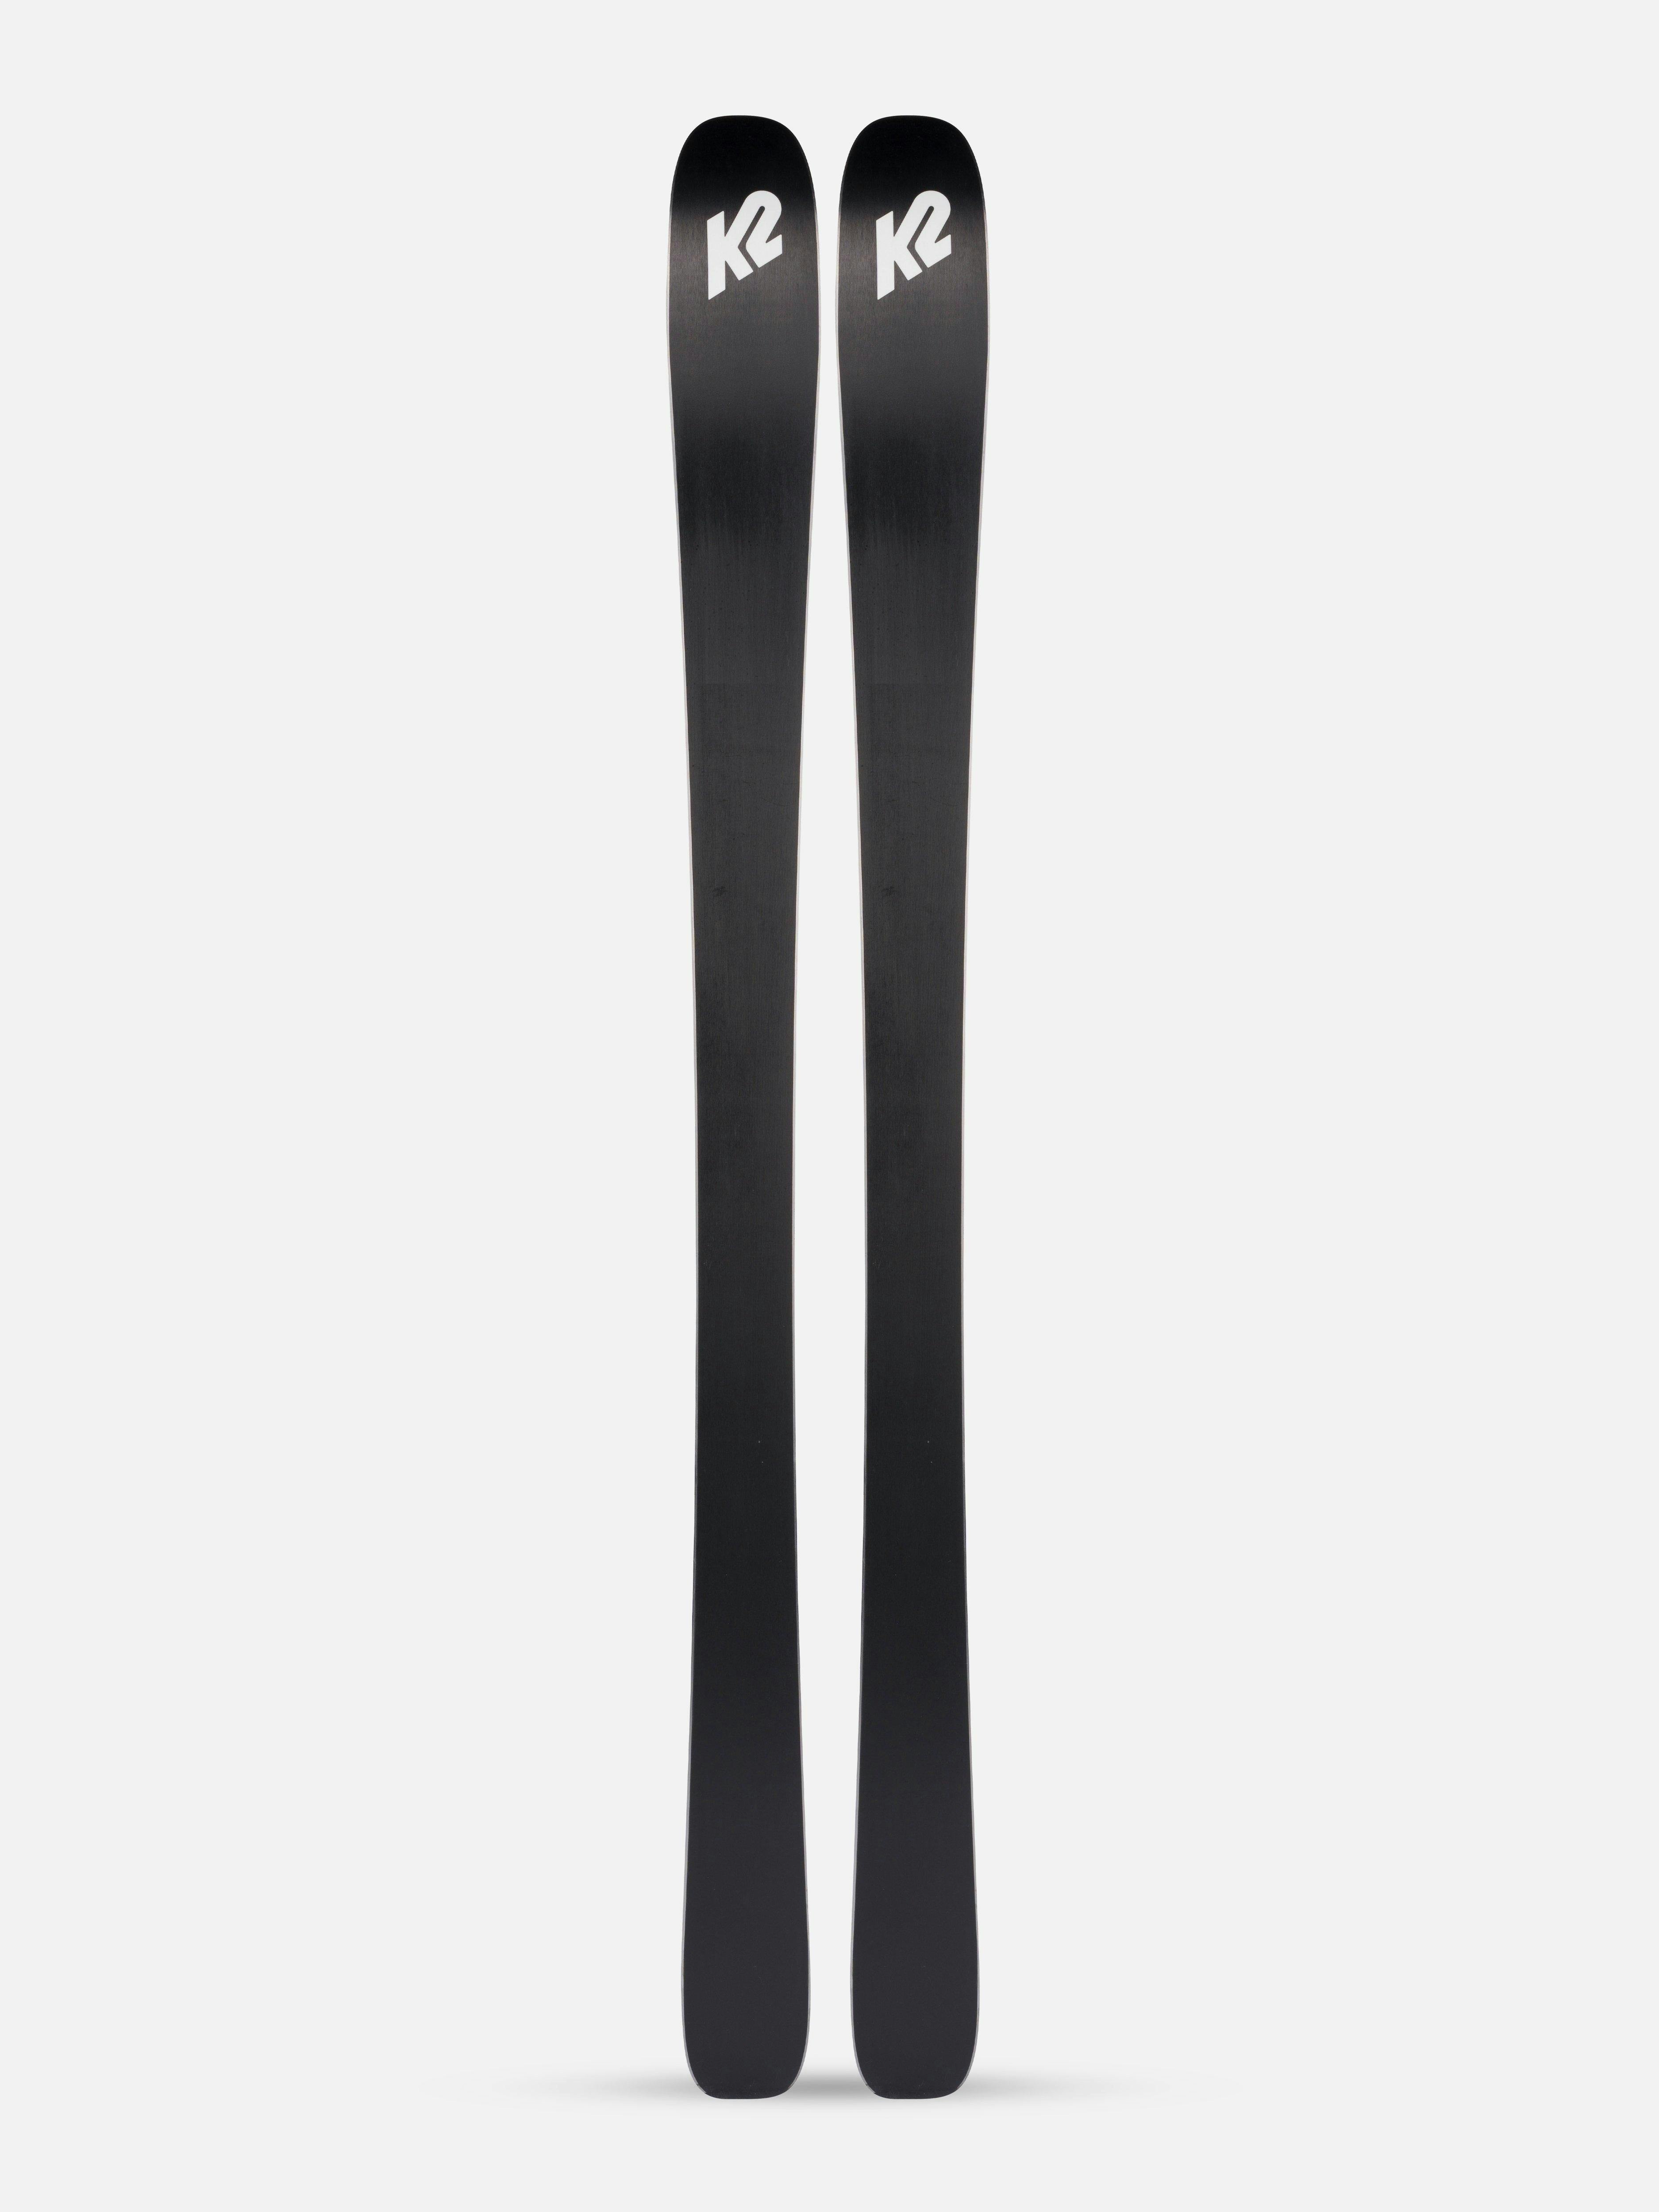 K2 Mindbender 85 Alliance Skis · Women's · 2022 · 170 cm